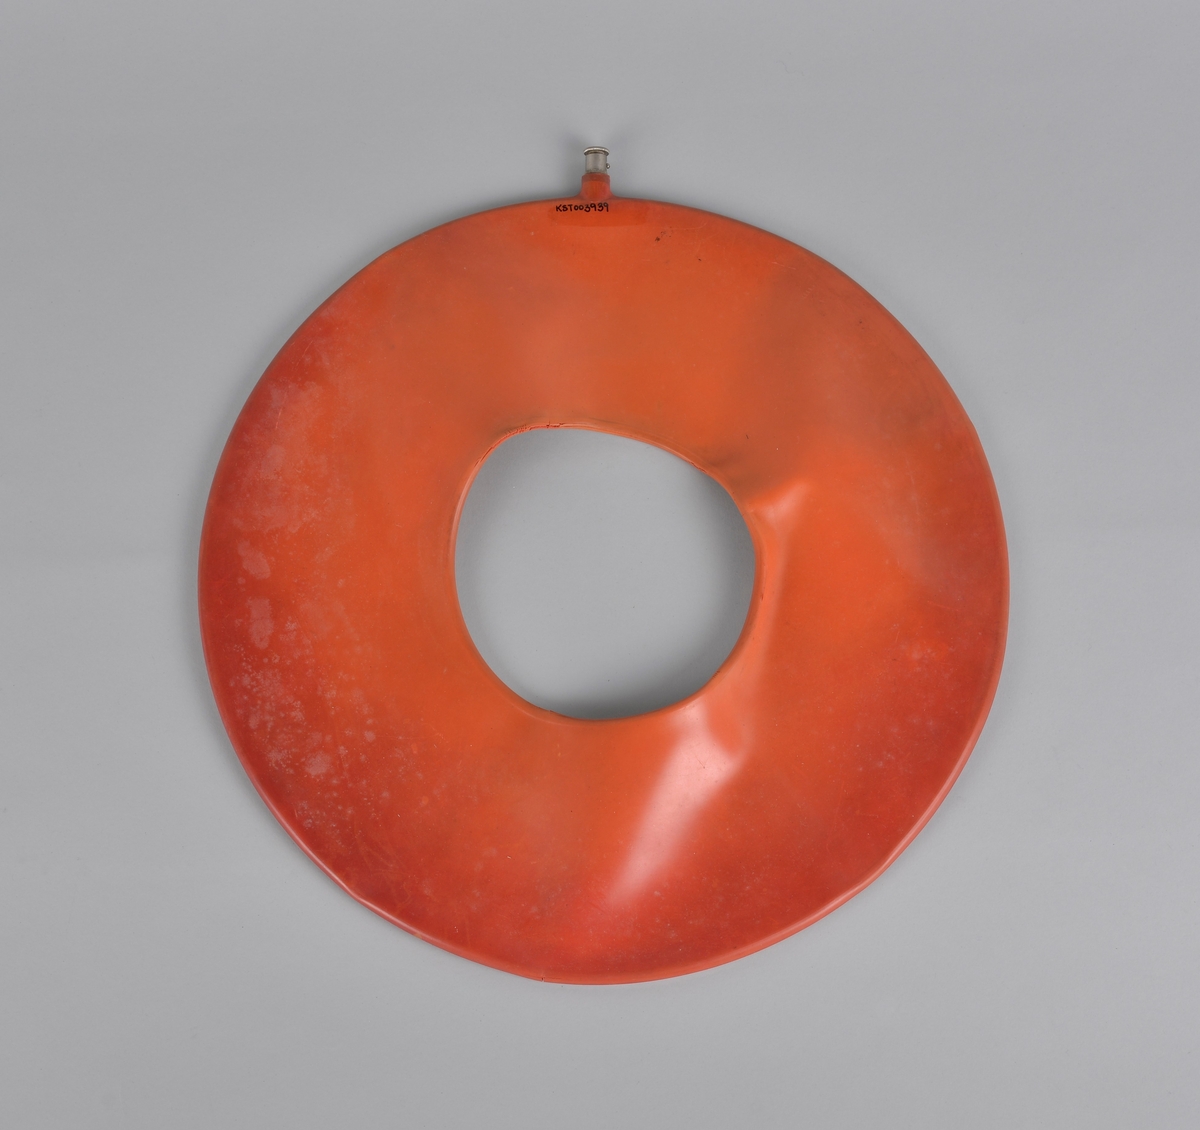 Oppblåsbar gummipute, formet som en ring. Ventil for å fylle i luft.
Brukt på Hitra Helsehus. Antatt datering 1950-årene